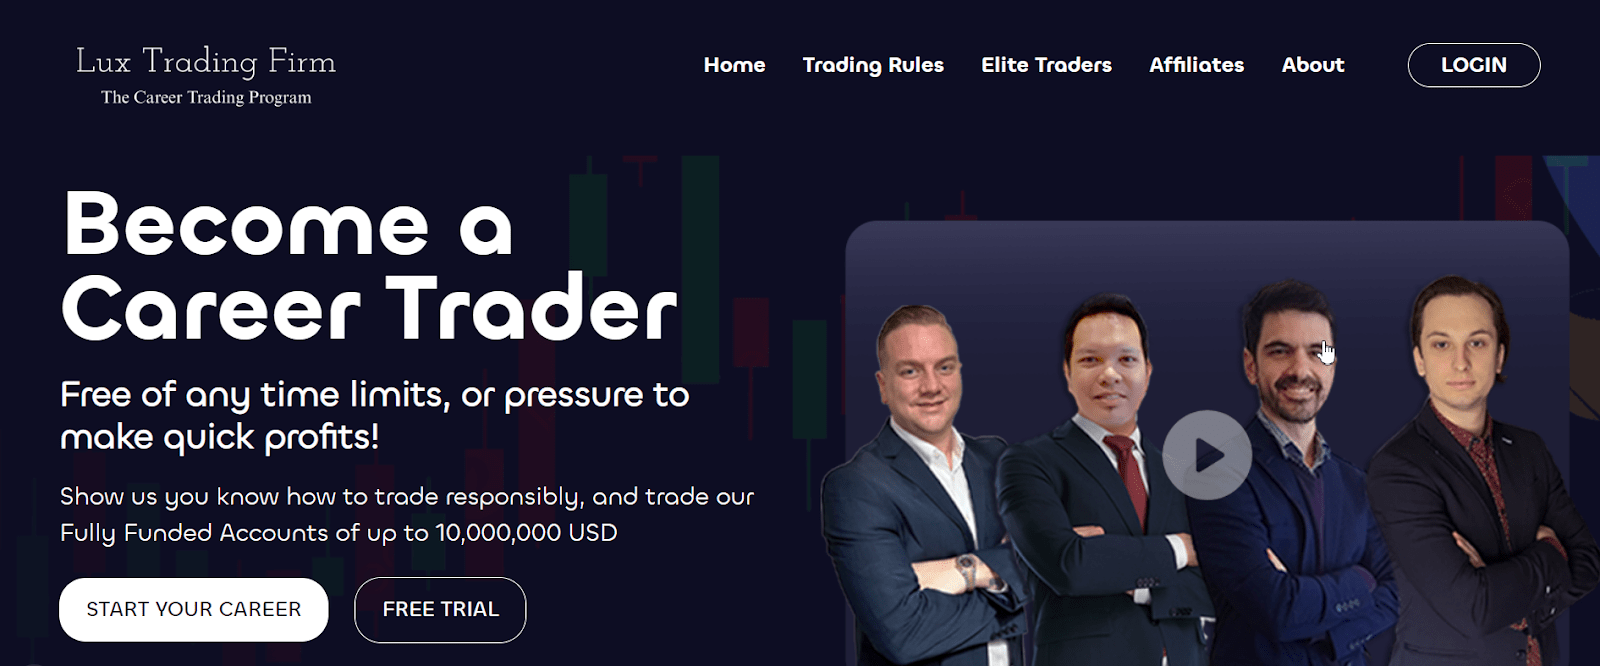 Lux Trading Firm की समीक्षा - निःशुल्क परीक्षण